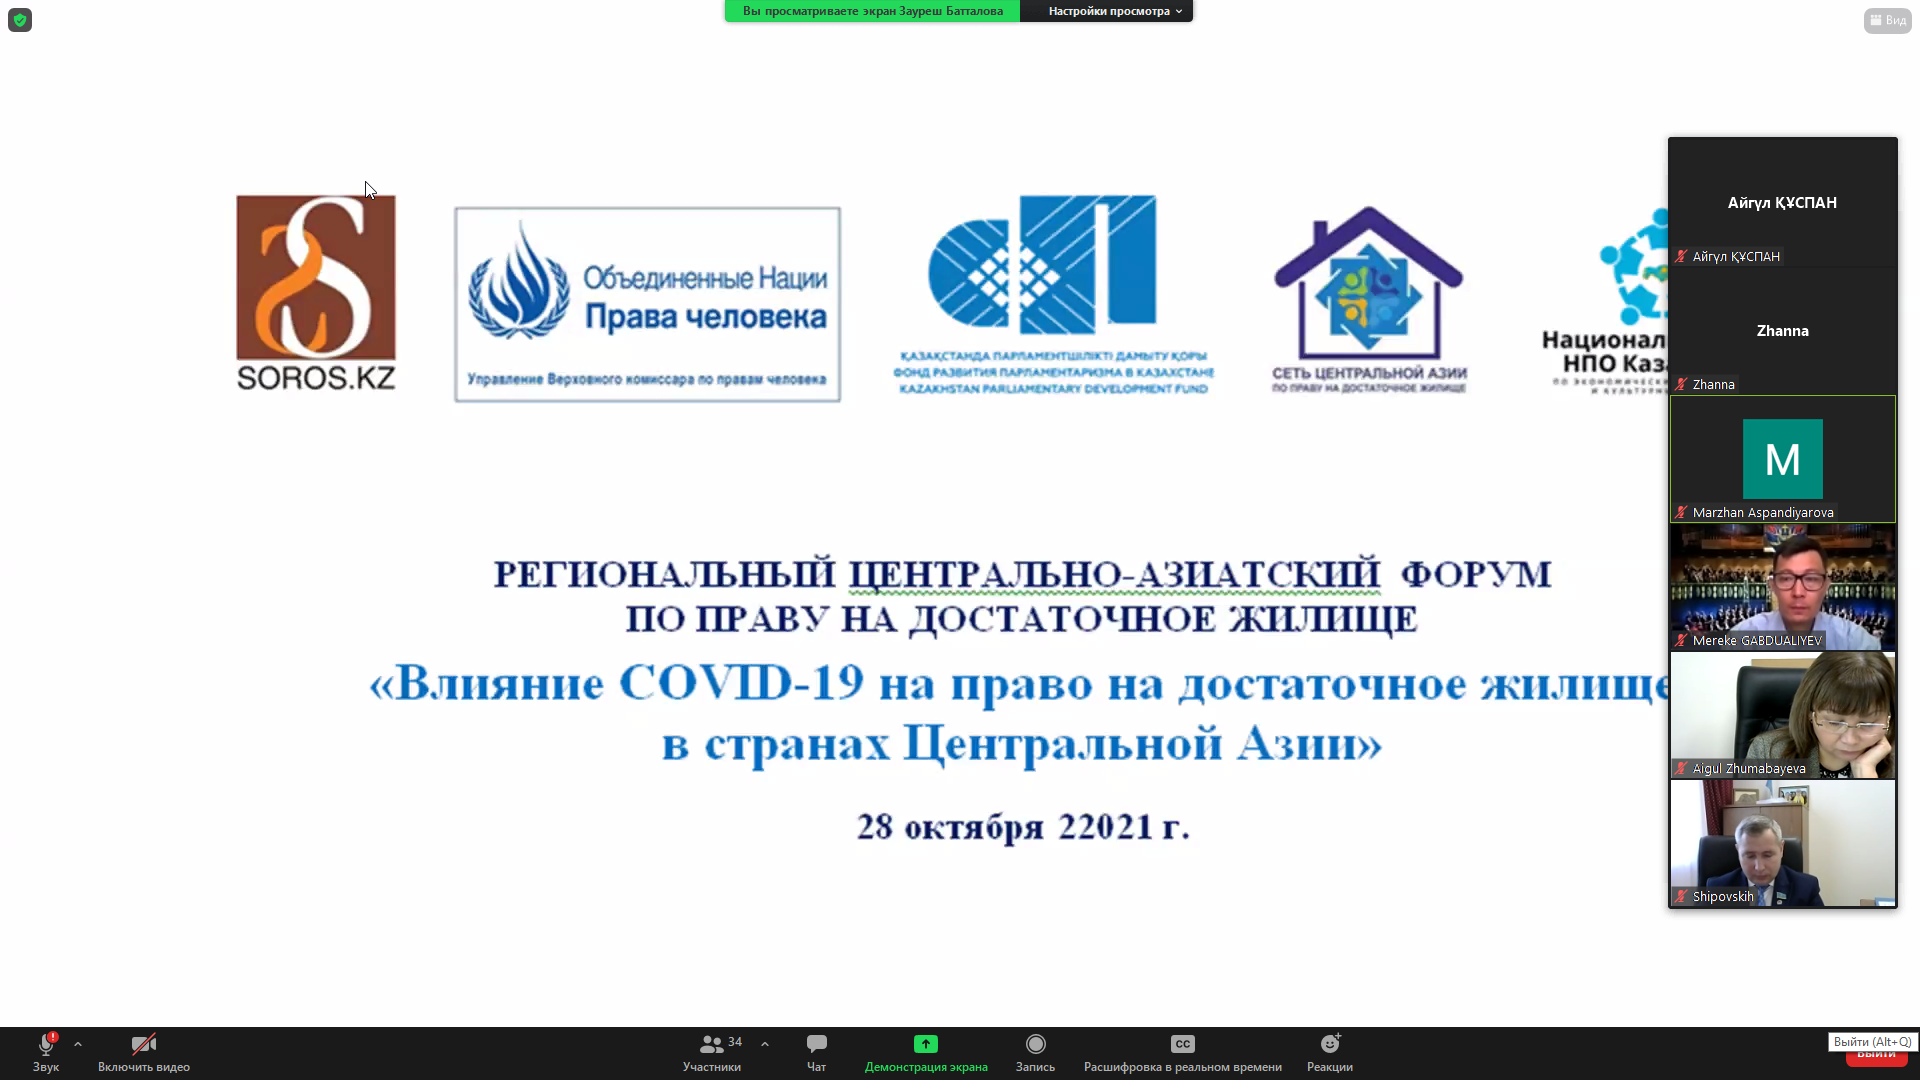 Региональный центрально-азиатский форум по праву на достаточное жилье «Влияние COVID-19 на право на достаточное жилище в странах Центральной Азии»